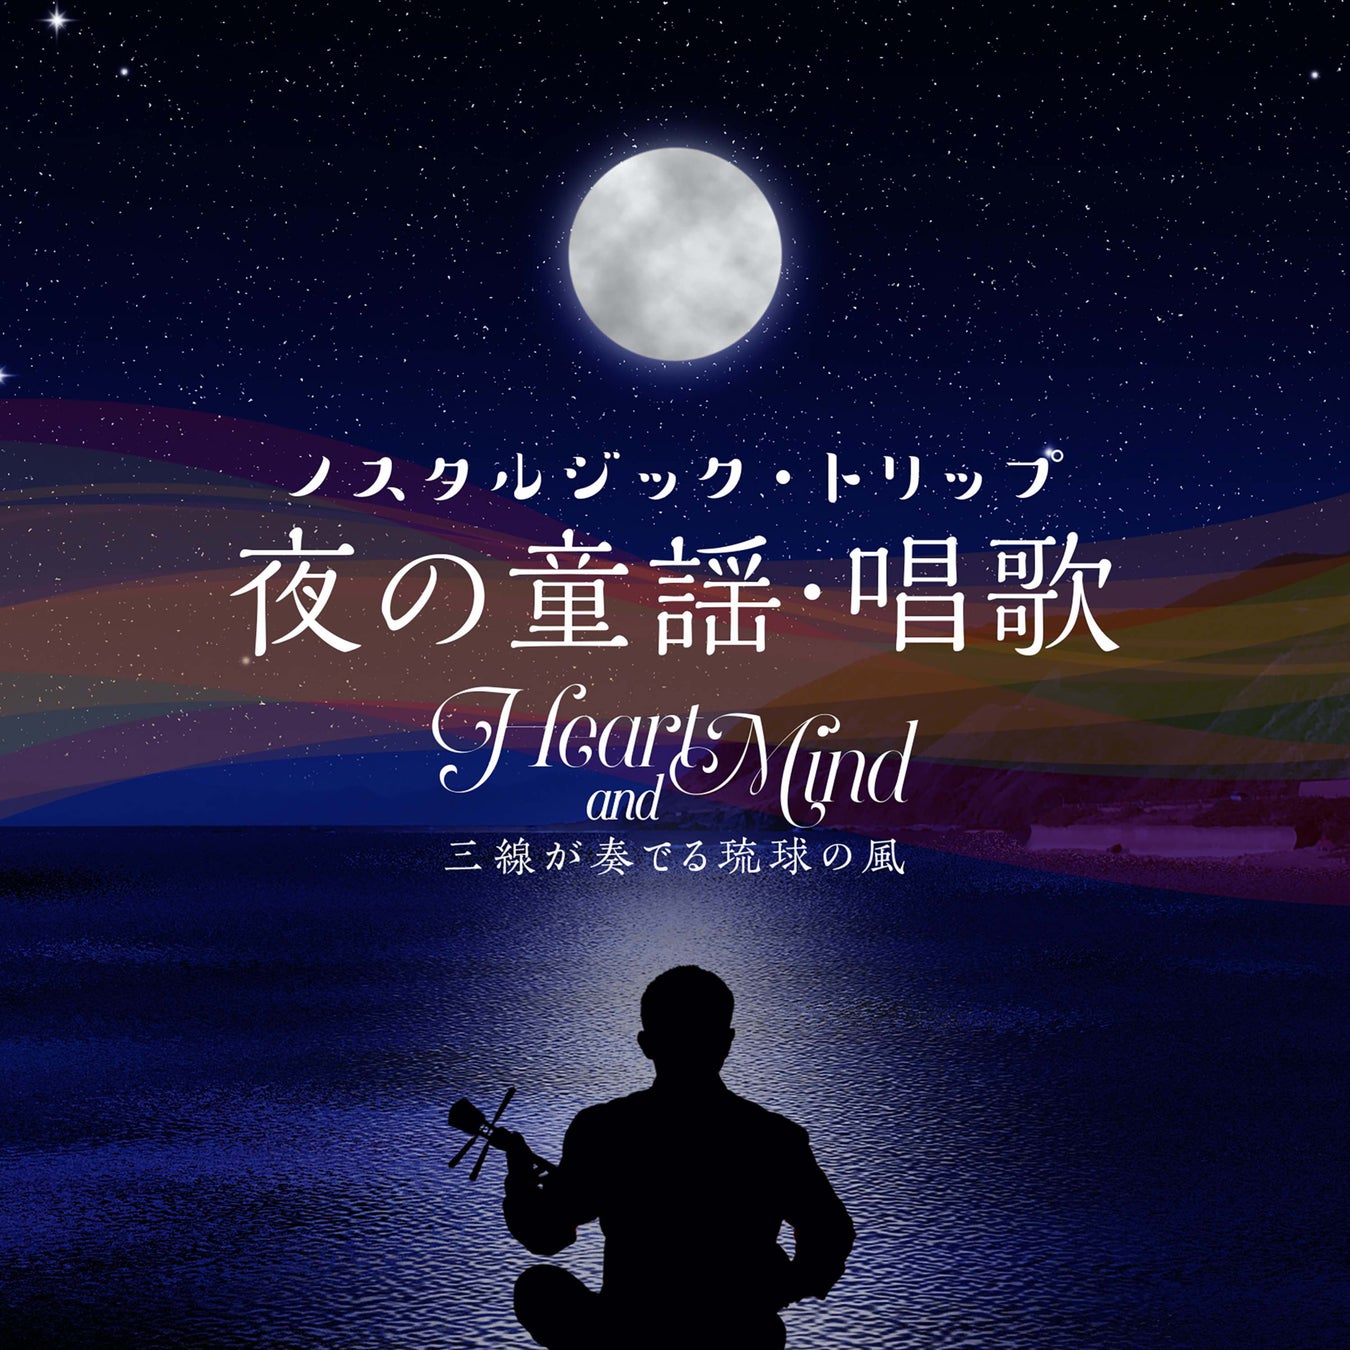 沖縄三線が奏でるノスタルジックなメロディーと波音のコラボで癒し体験のサブ画像1